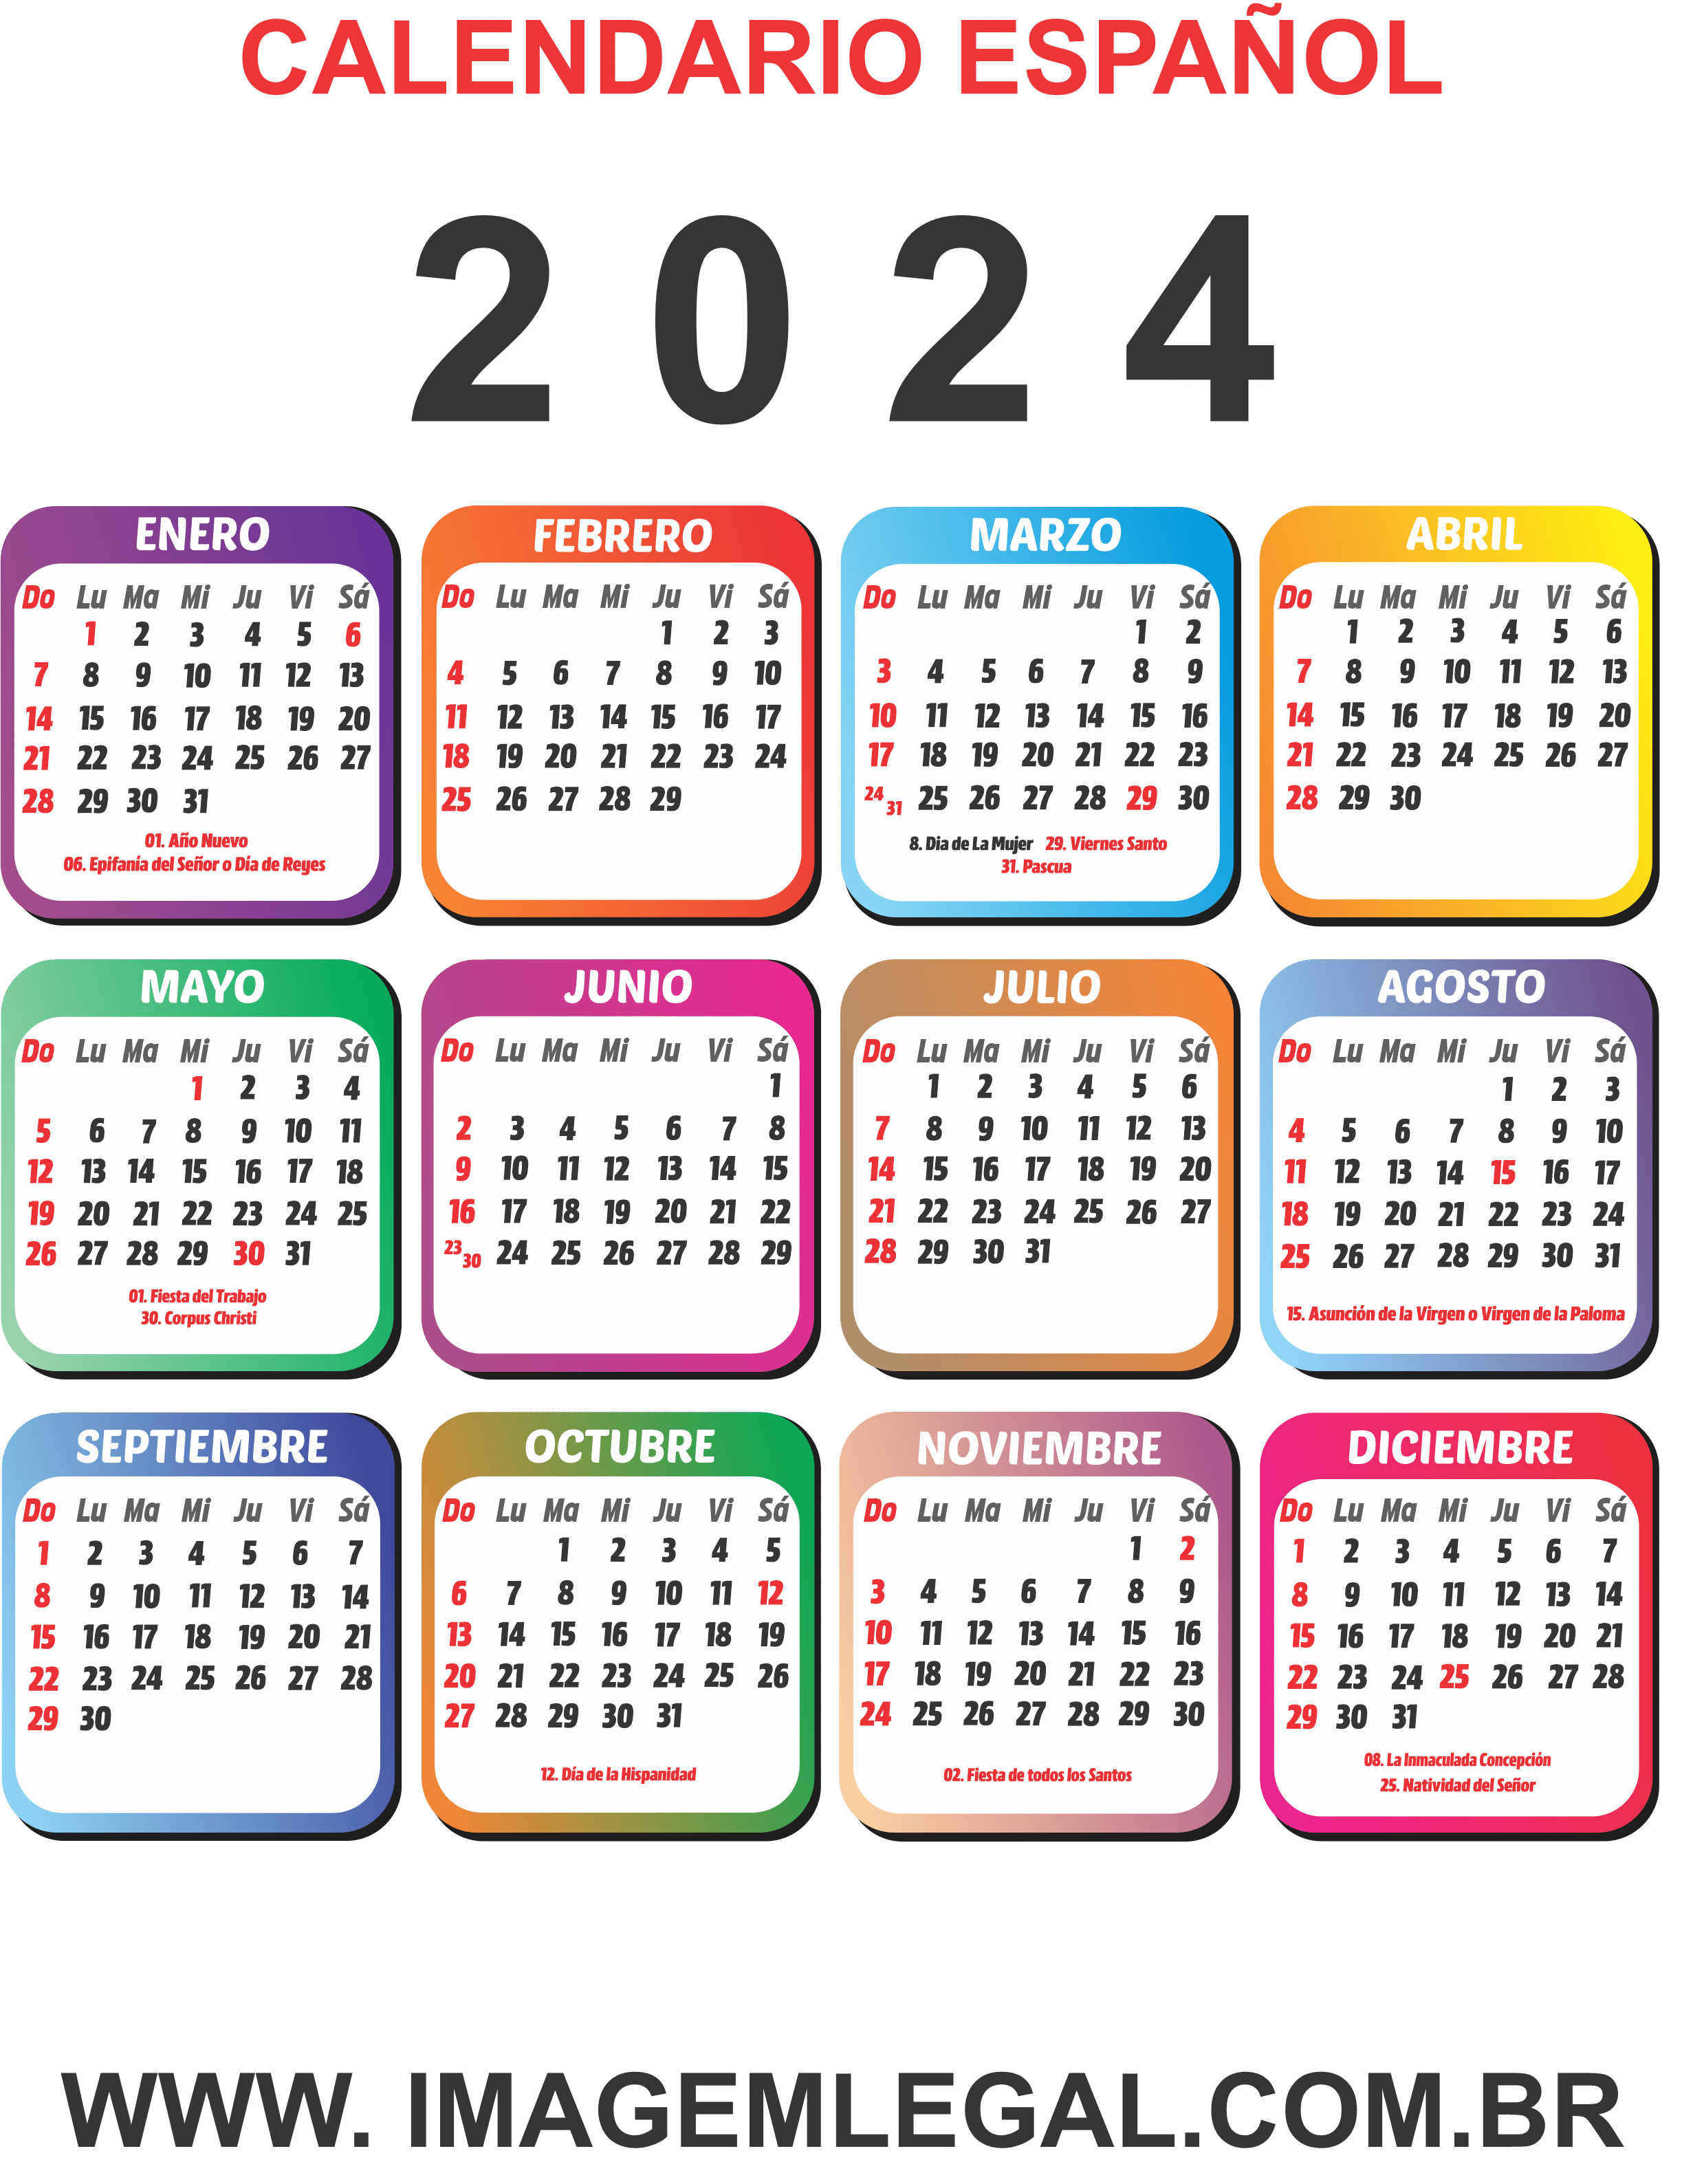 Calendario 2024 Español con Dias Festivos Vistoso Imagem Legal